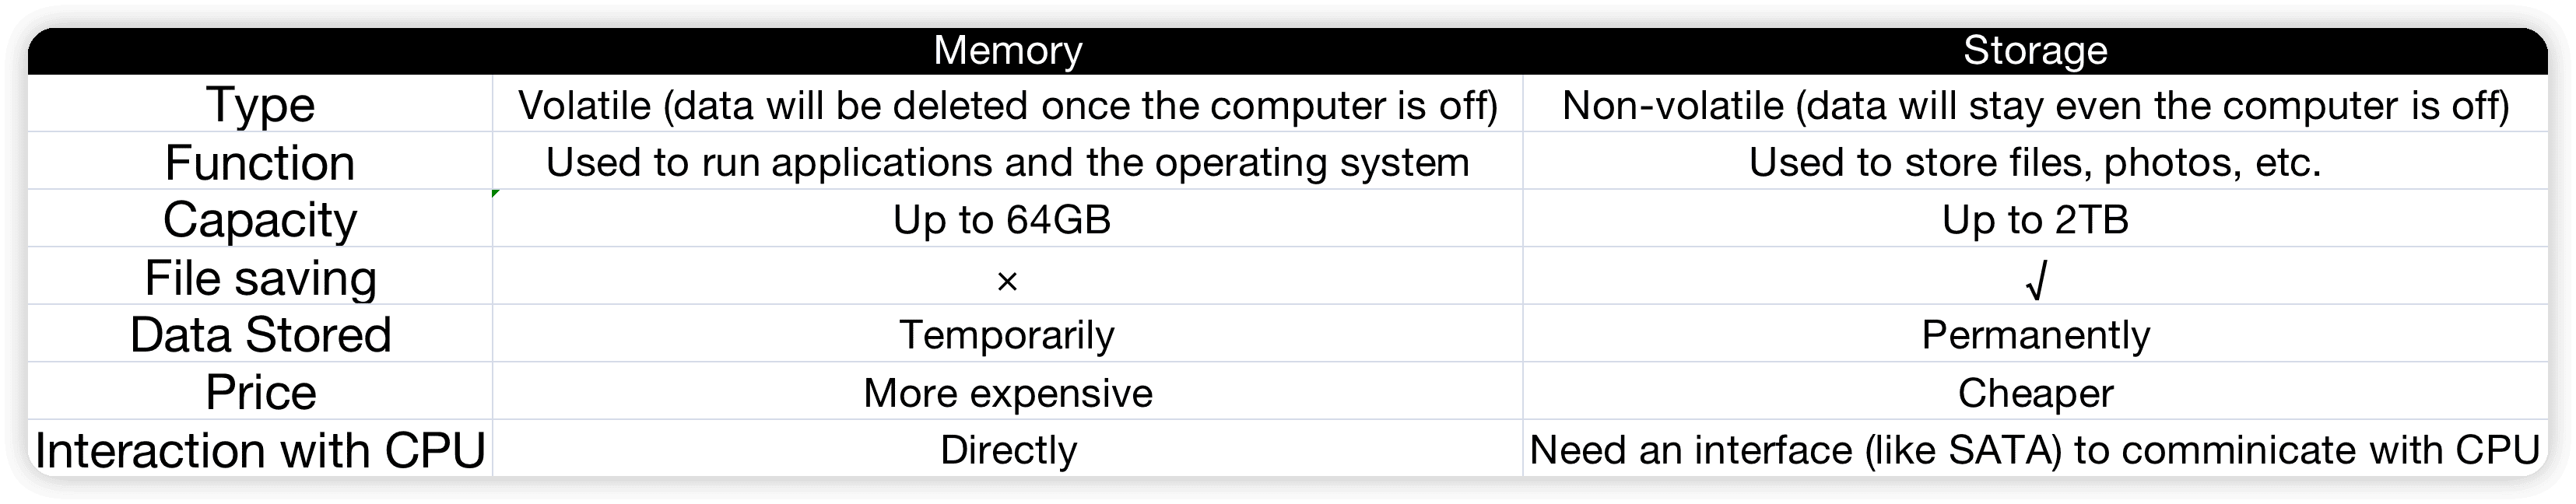 Memory vs Storage